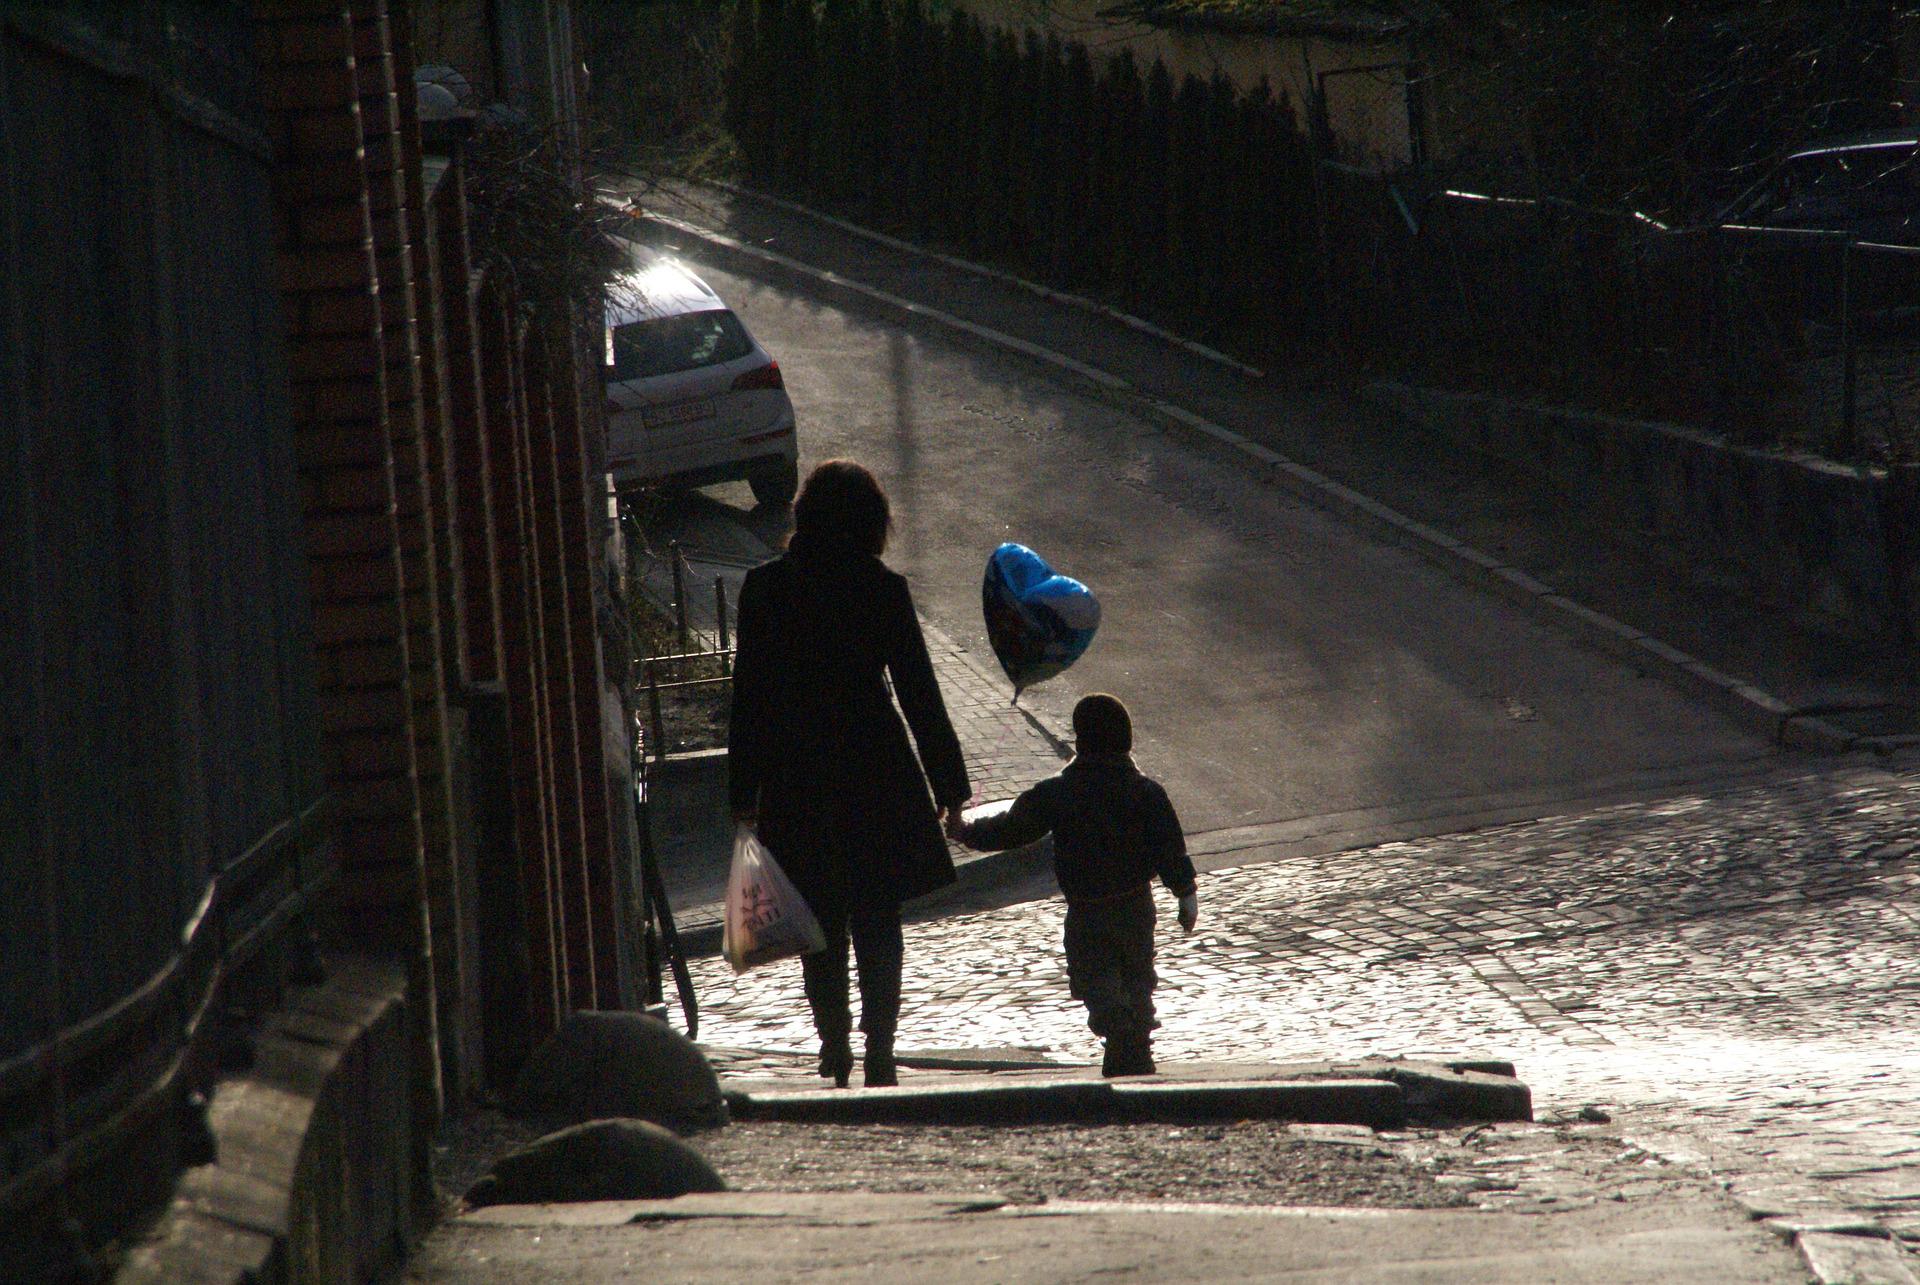 Una madre camina de la mano de su hijo. | Foto: Pixebay